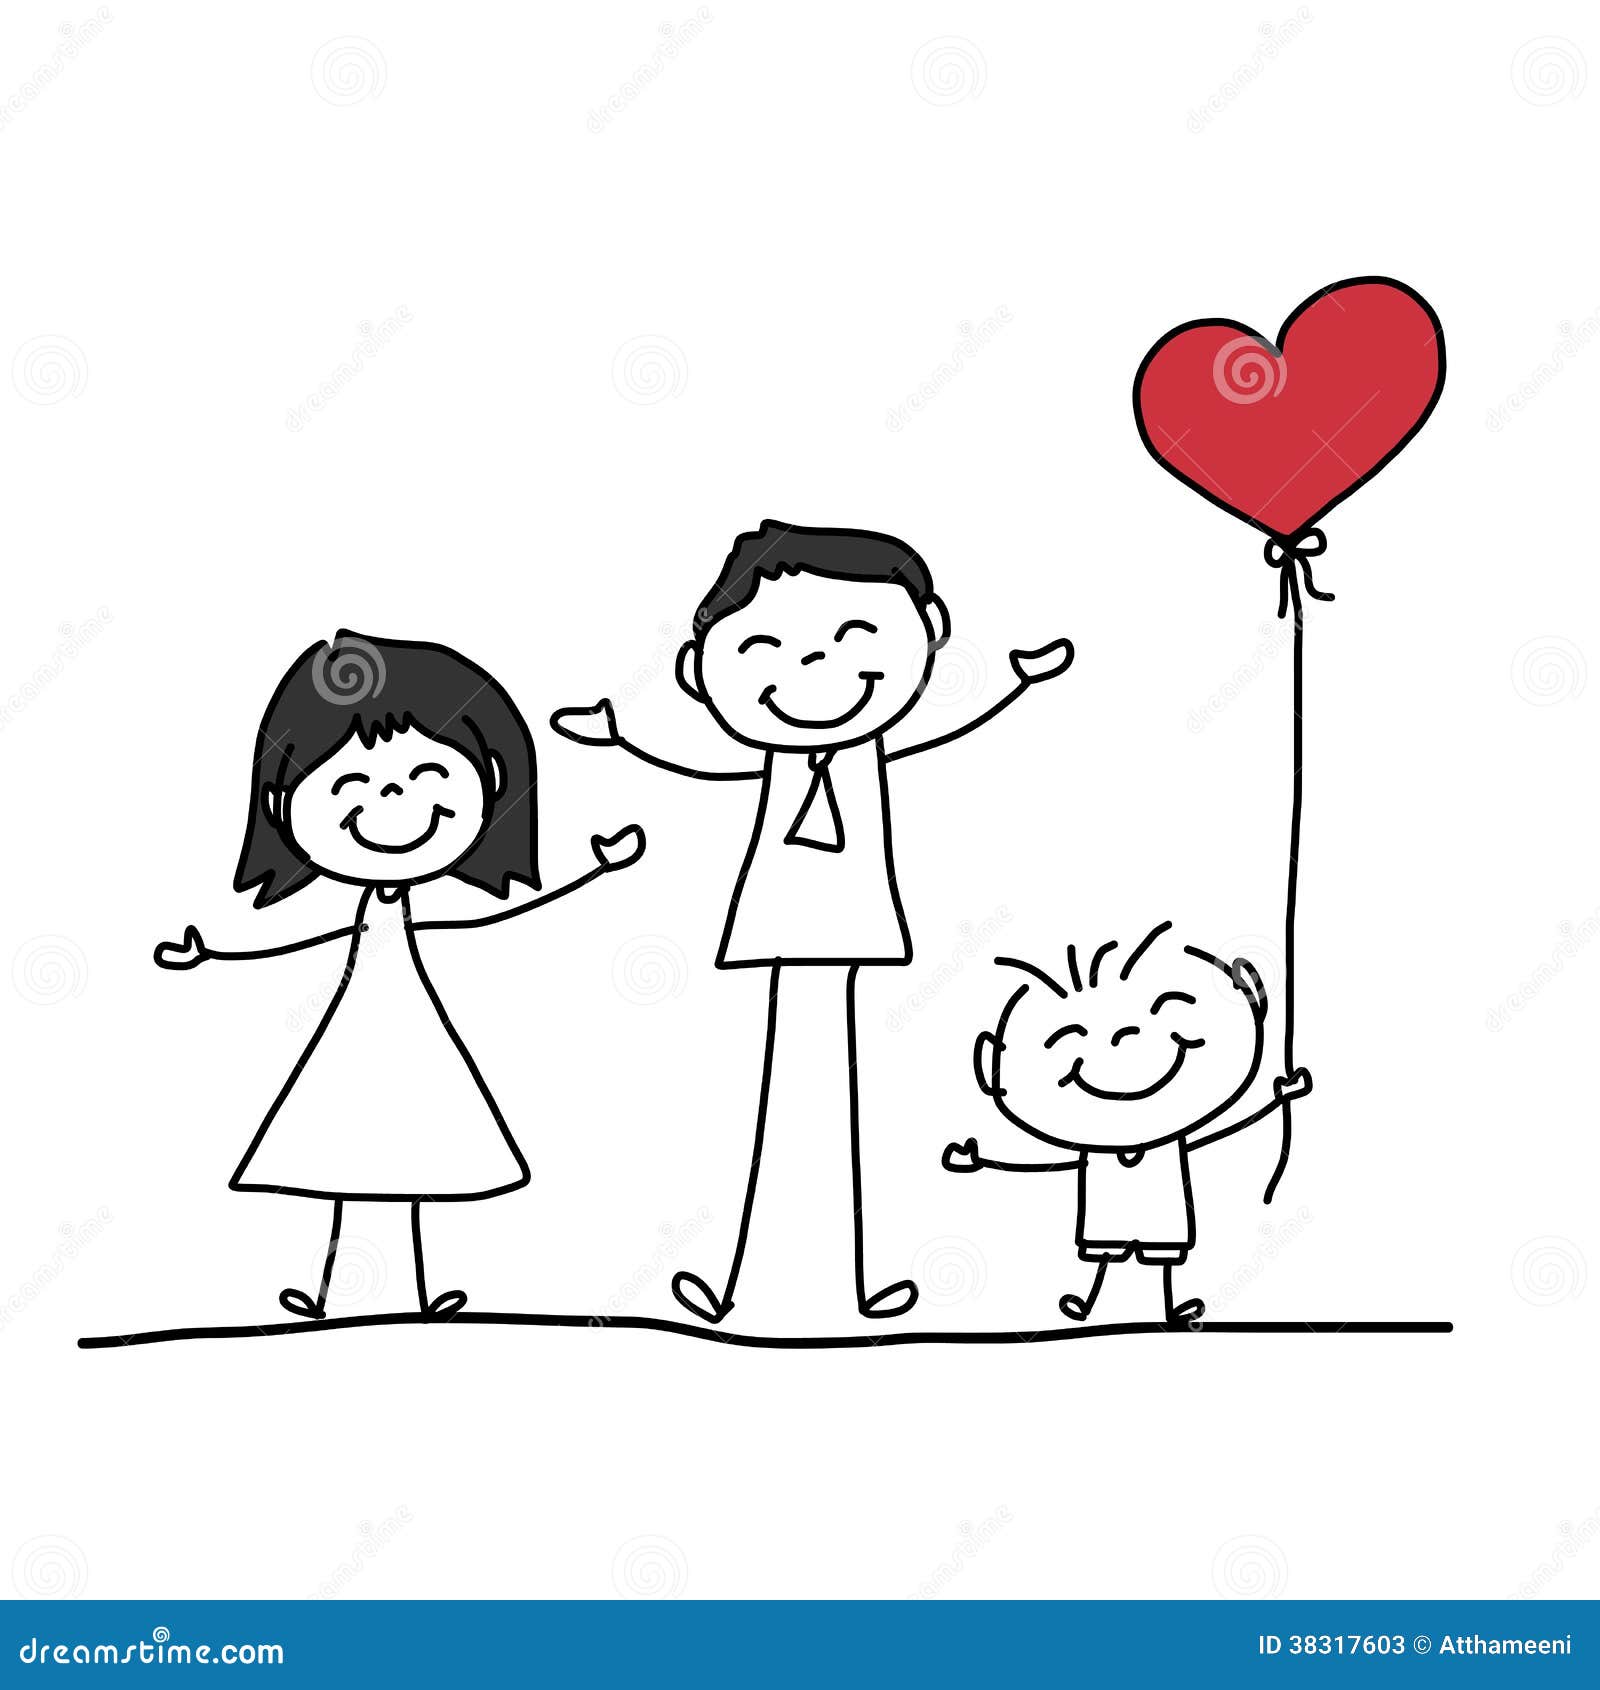 Hand Drawing Cartoon Happy Family Stock Photos Image 38317603 Royalty